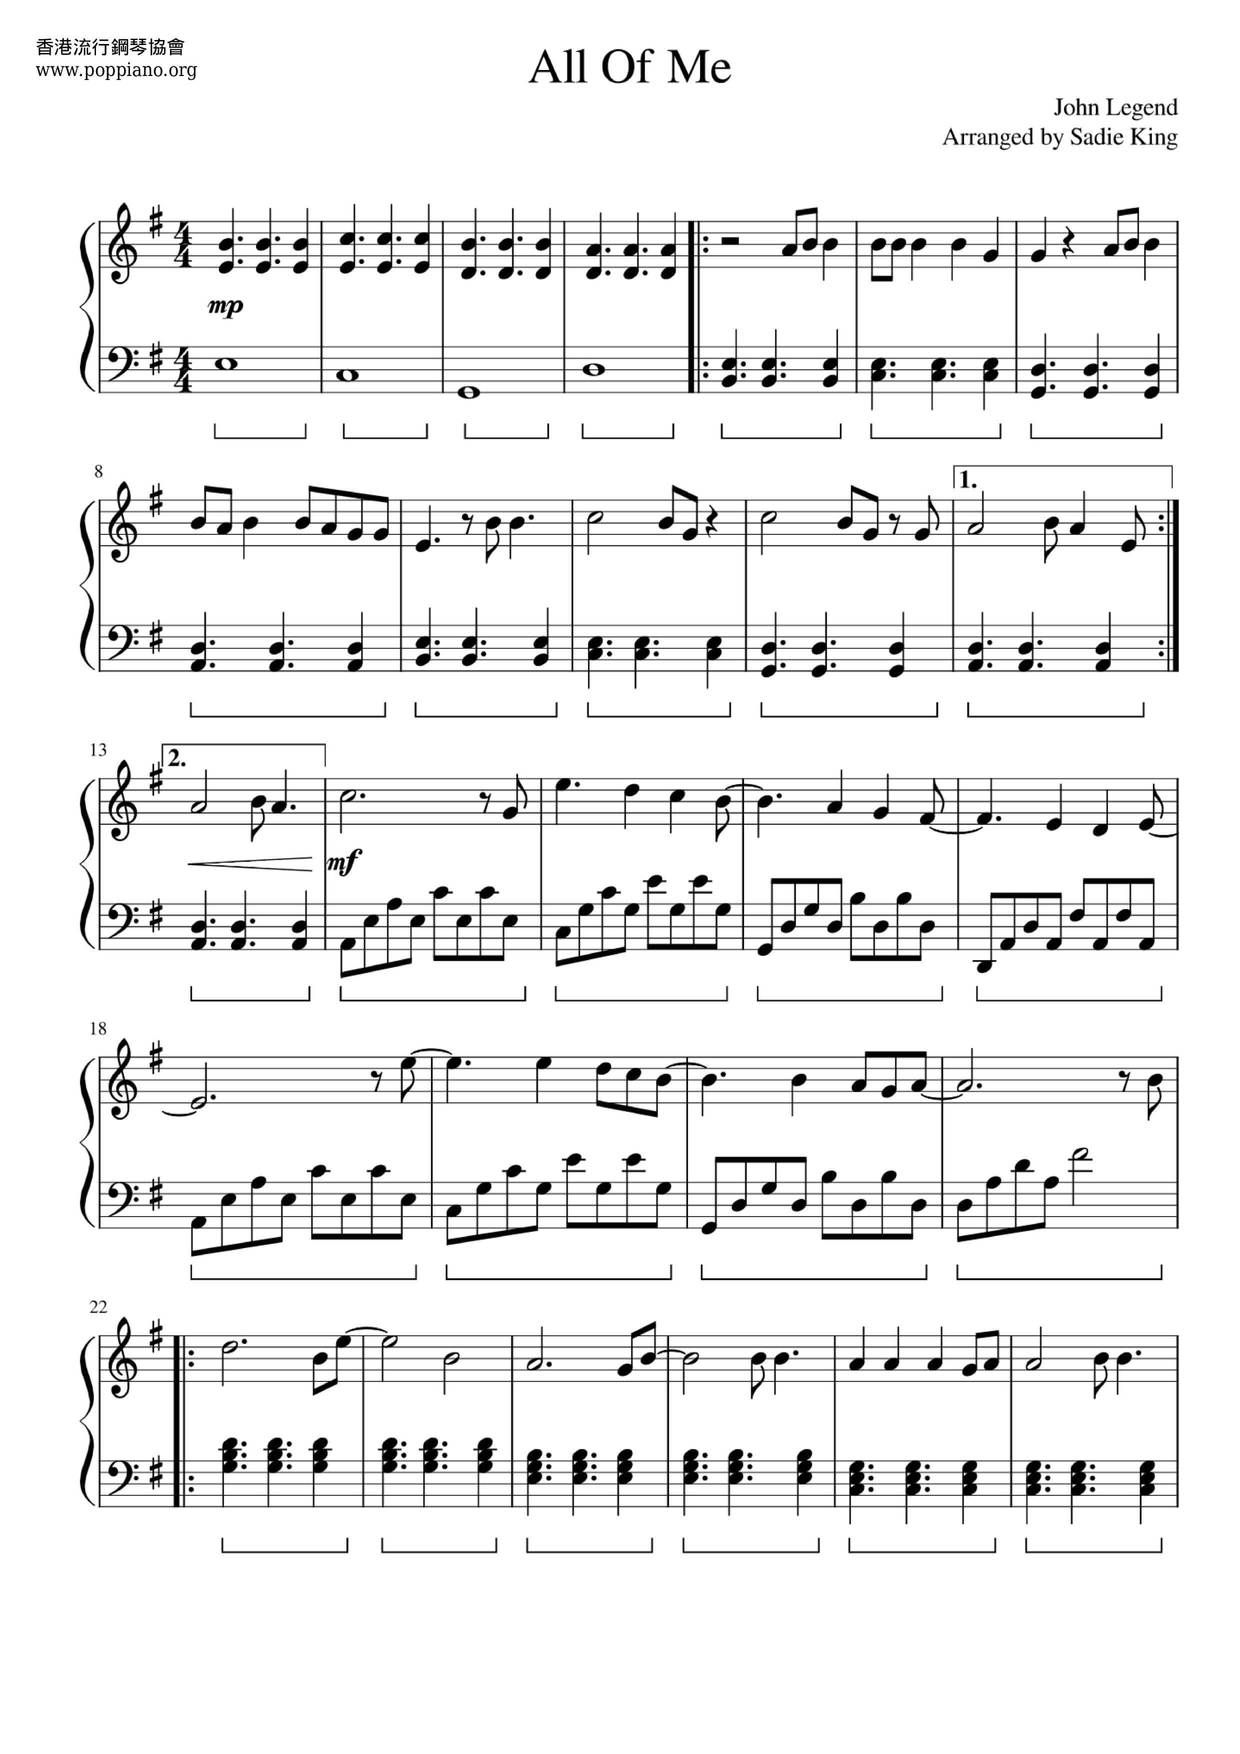 John LegendAll Of Me Sheet Music pdf, Free Score Download ★